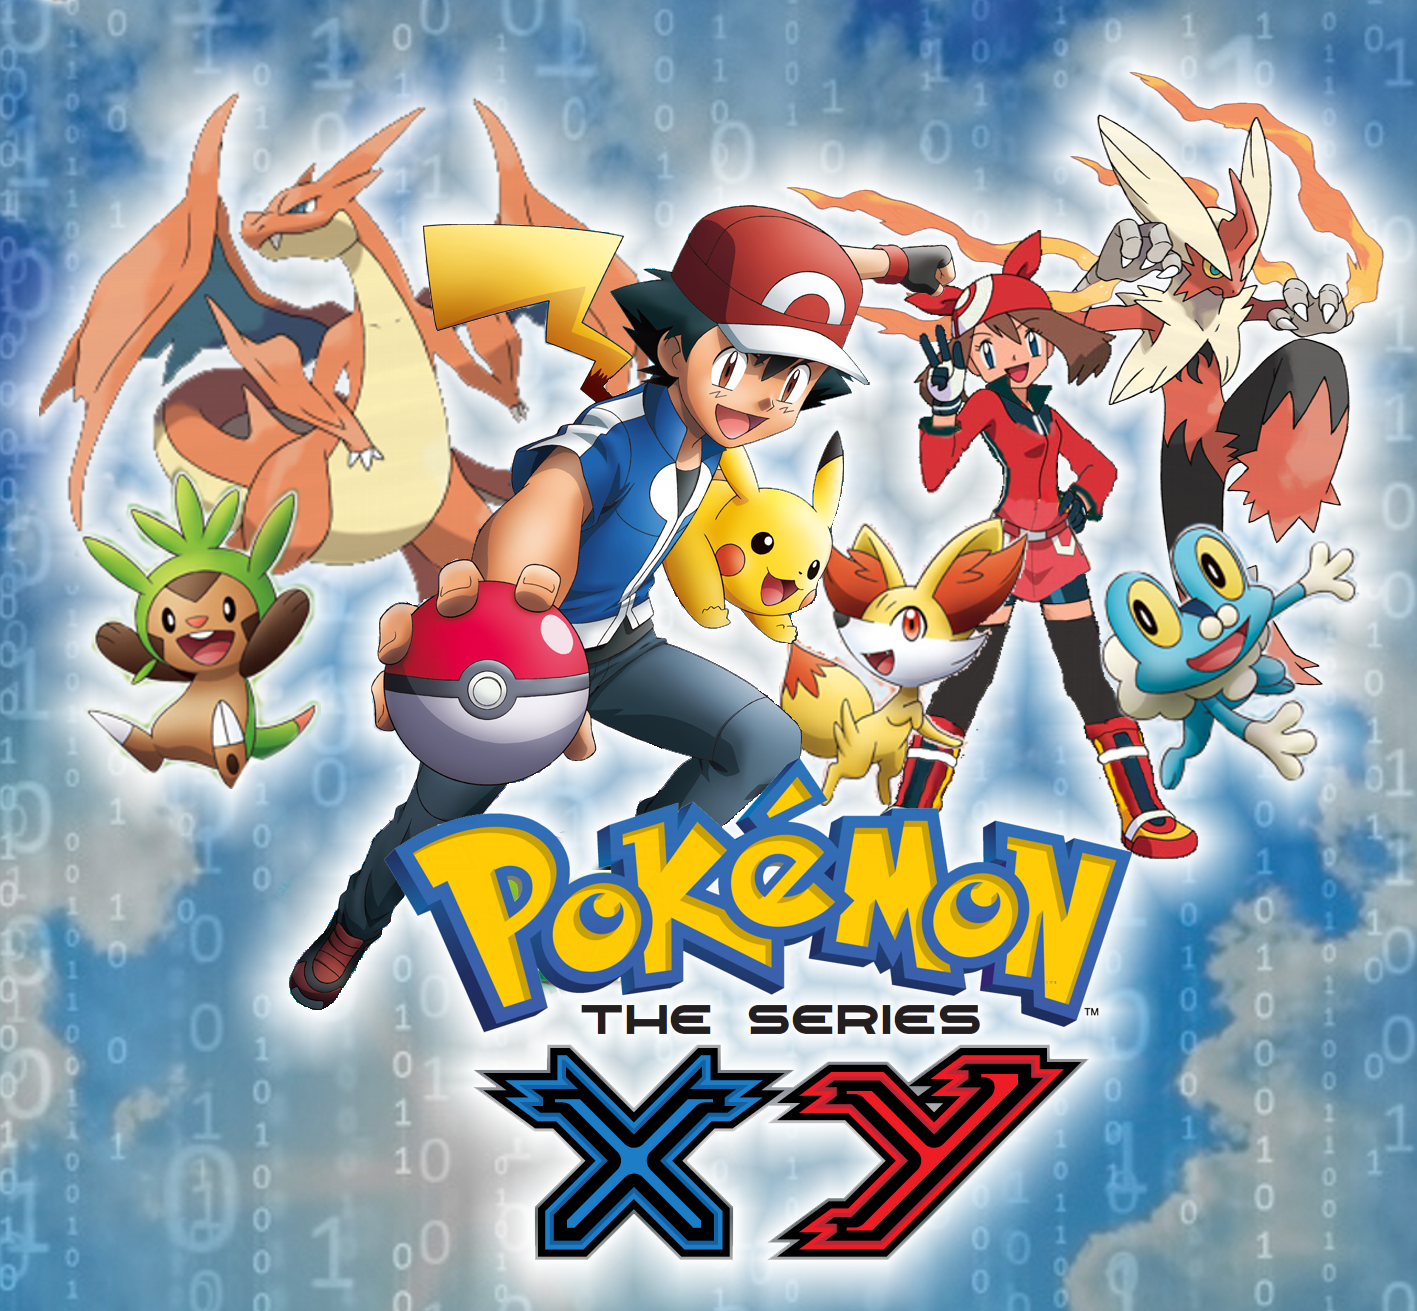 Pokémon XY, Dublado Br,EP 1,Parte 4 #pokemon #pokemonxyz